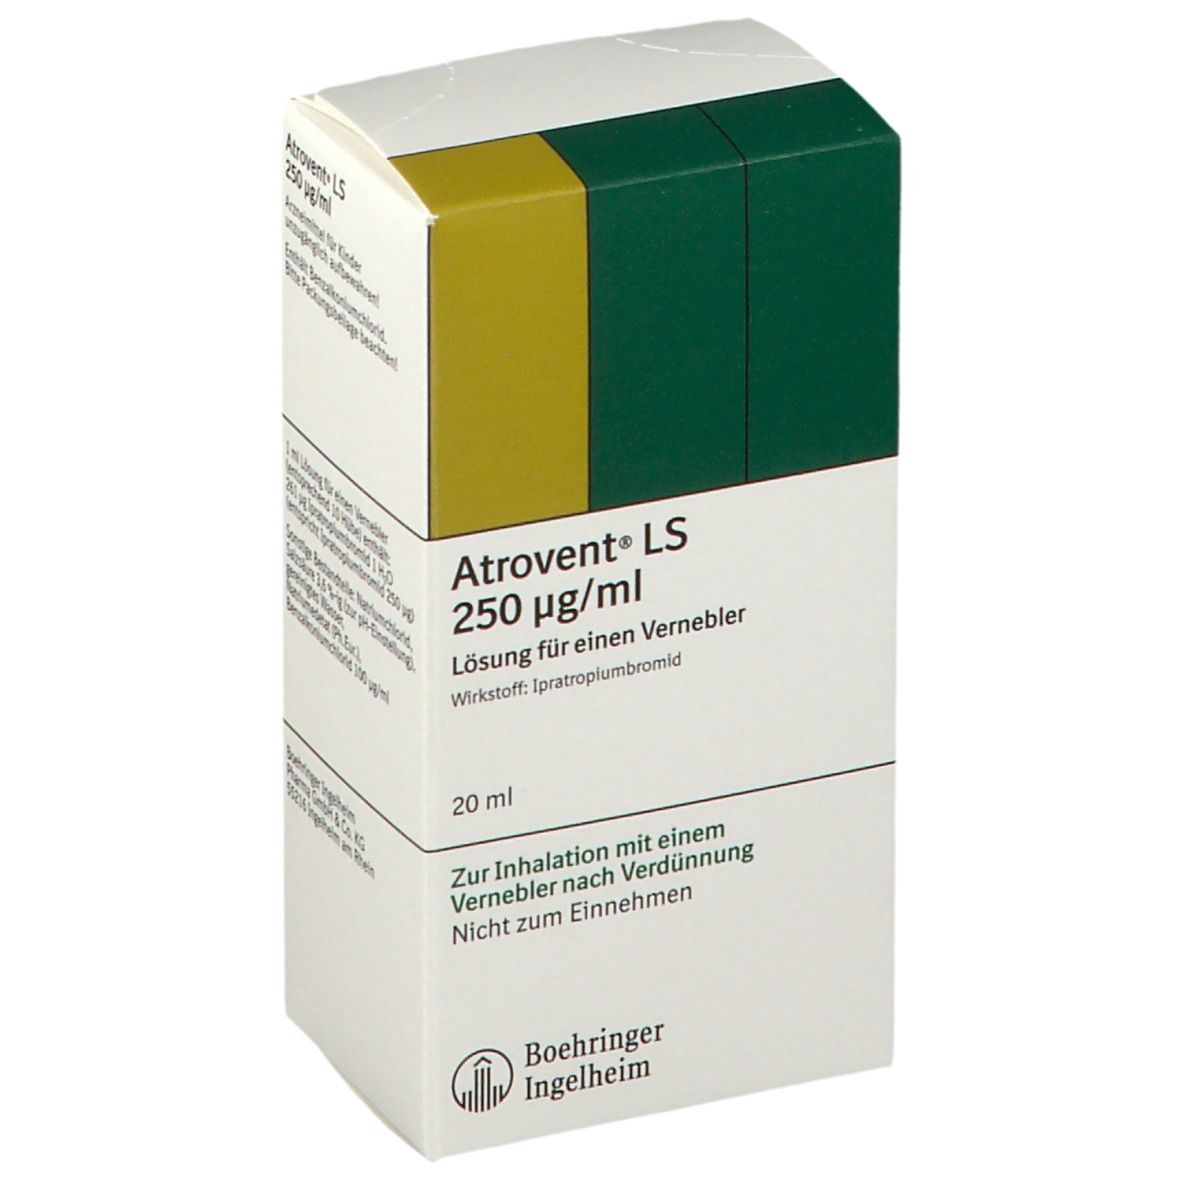 Atrovent® LS 250 µg/ml